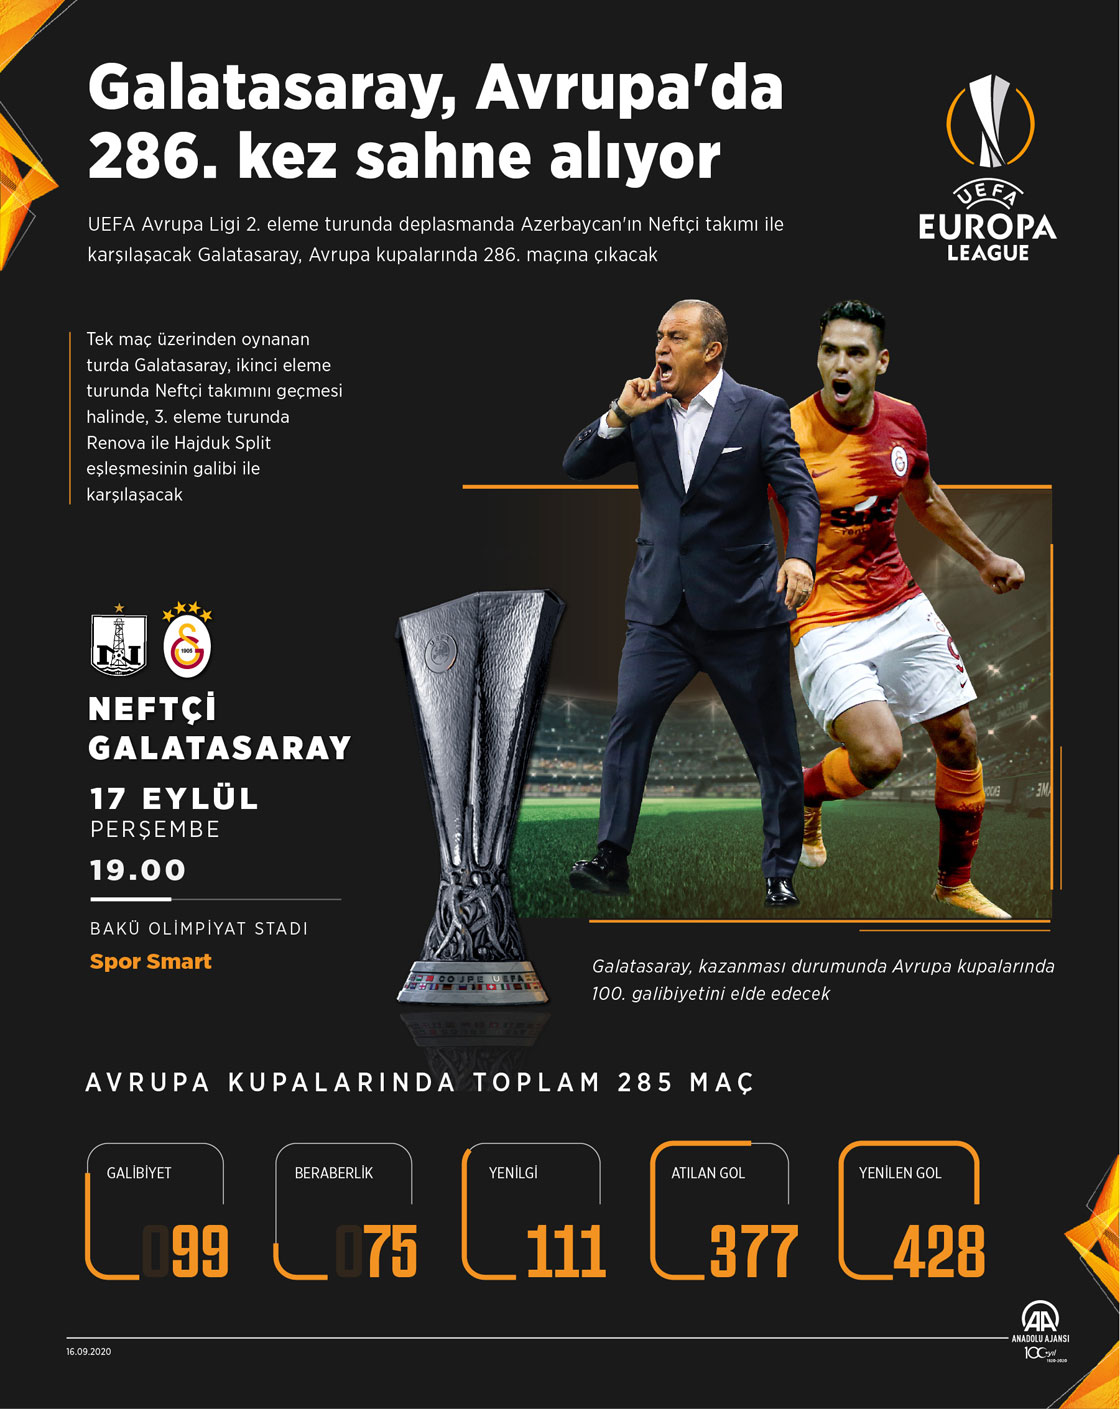 Galatasaray, Avrupa'da 286. kez sahne alıyor